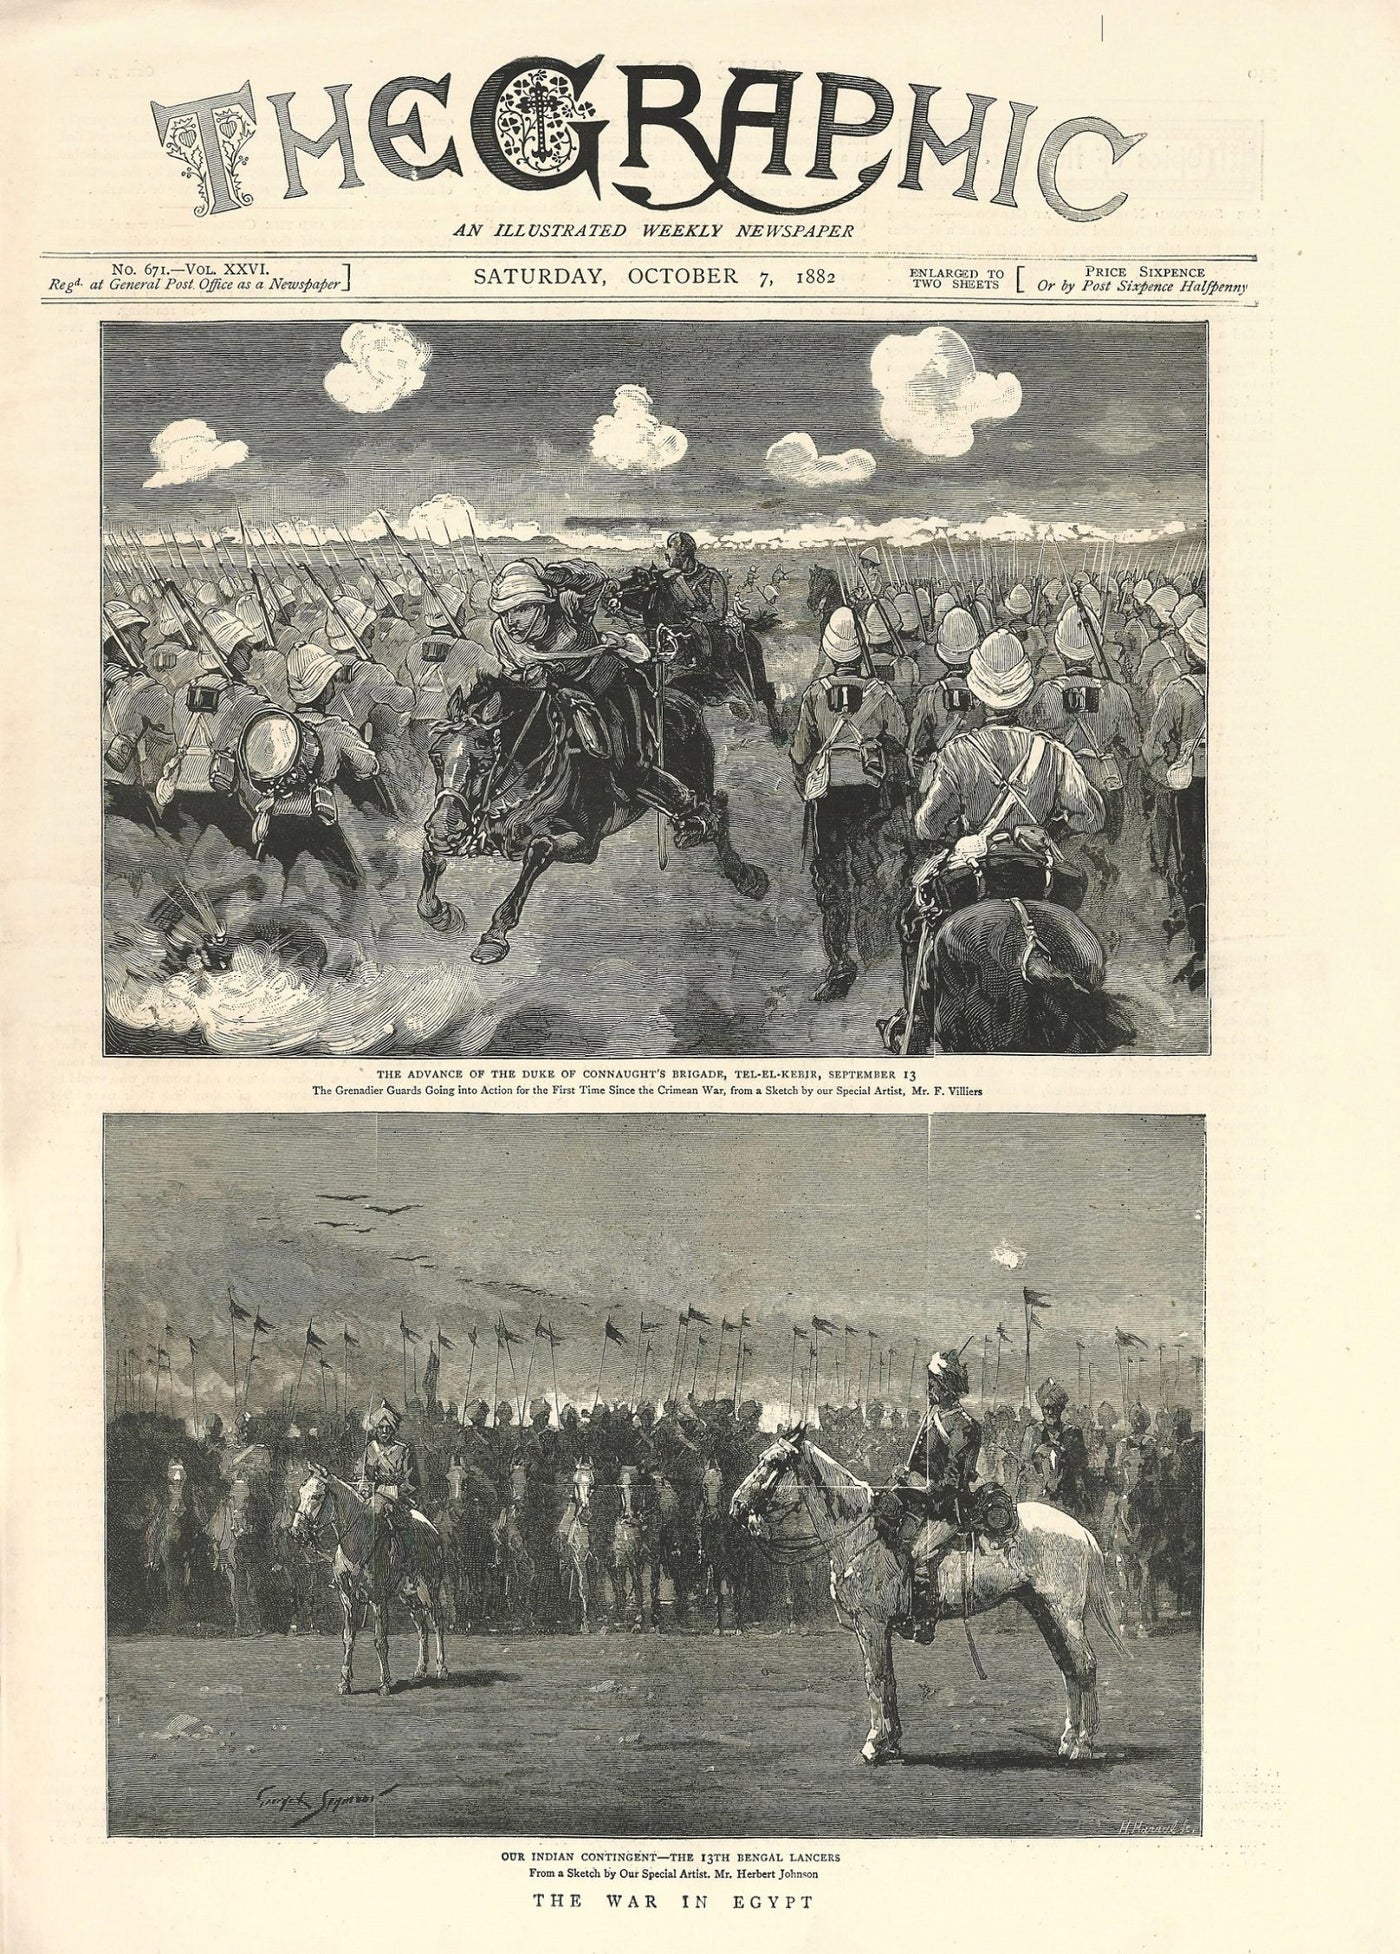 Grenadier Guards & Bengal Lancers Tel El Kebir Egypt 1882